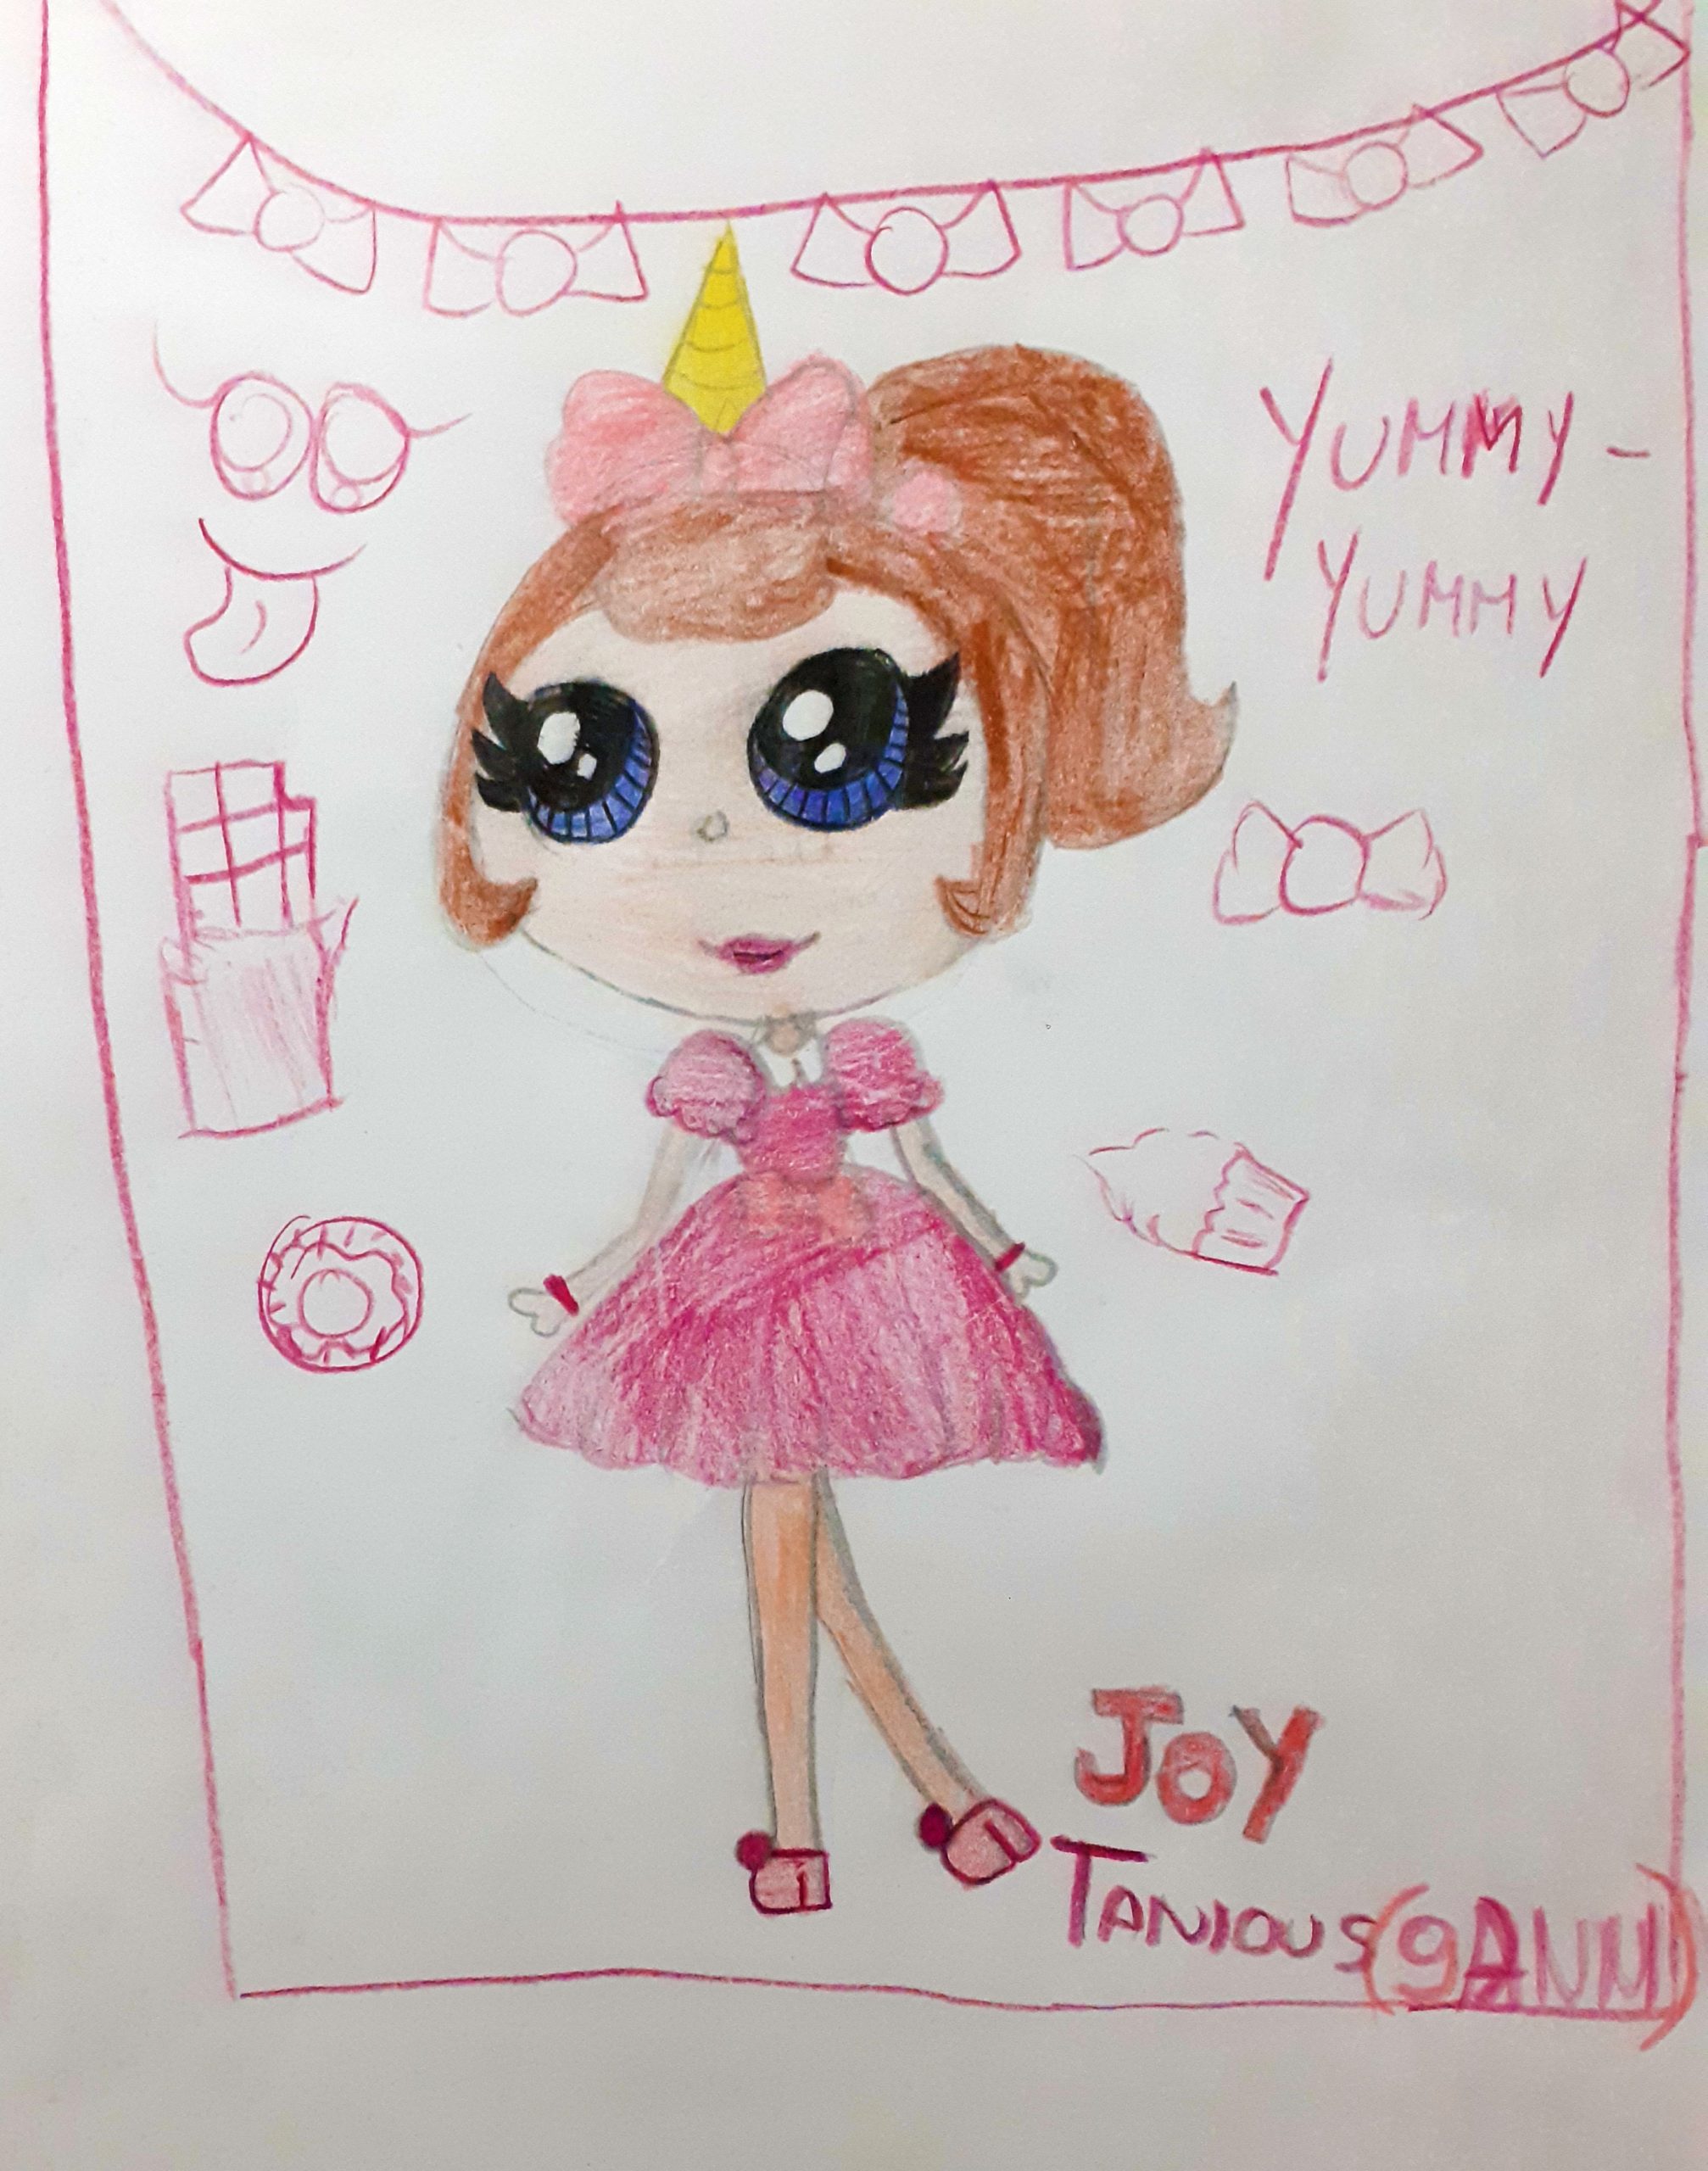 Questo disegno lo ha fatto Joy (9 anni)